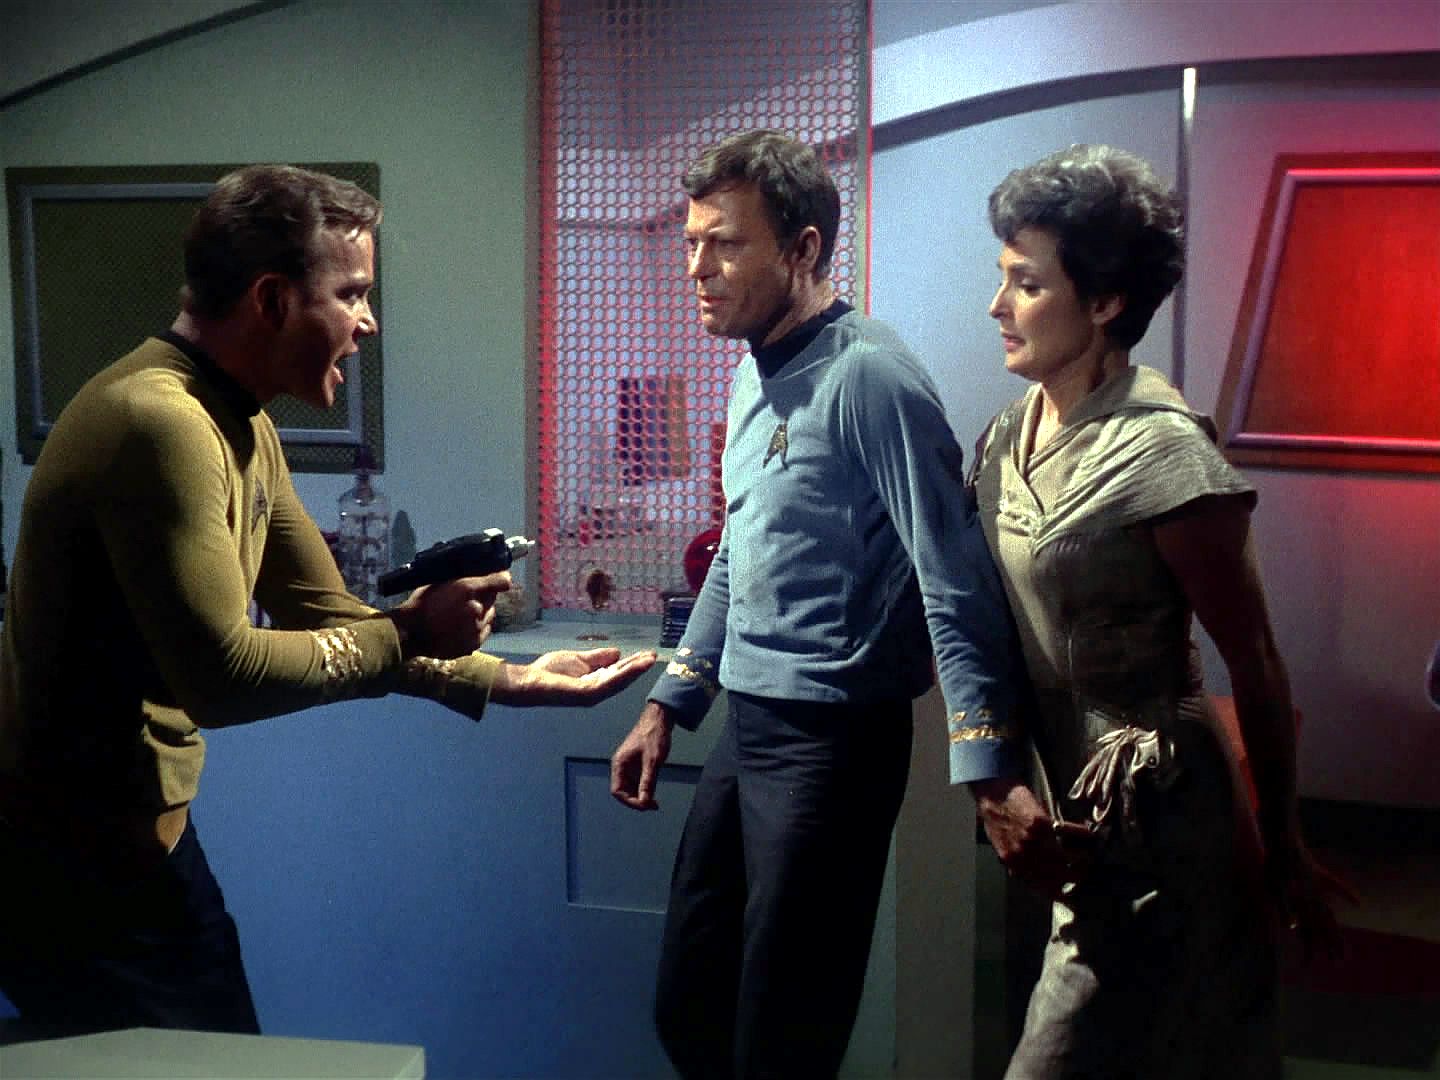 V kajutě doktora najdou pravého McCoye a stvoření, které se pro změnu opět proměnilo v Nancy. Když za doktorem přijde kapitán a Spock, McCoy jim prostě nevěří a "Nancy" chrání.